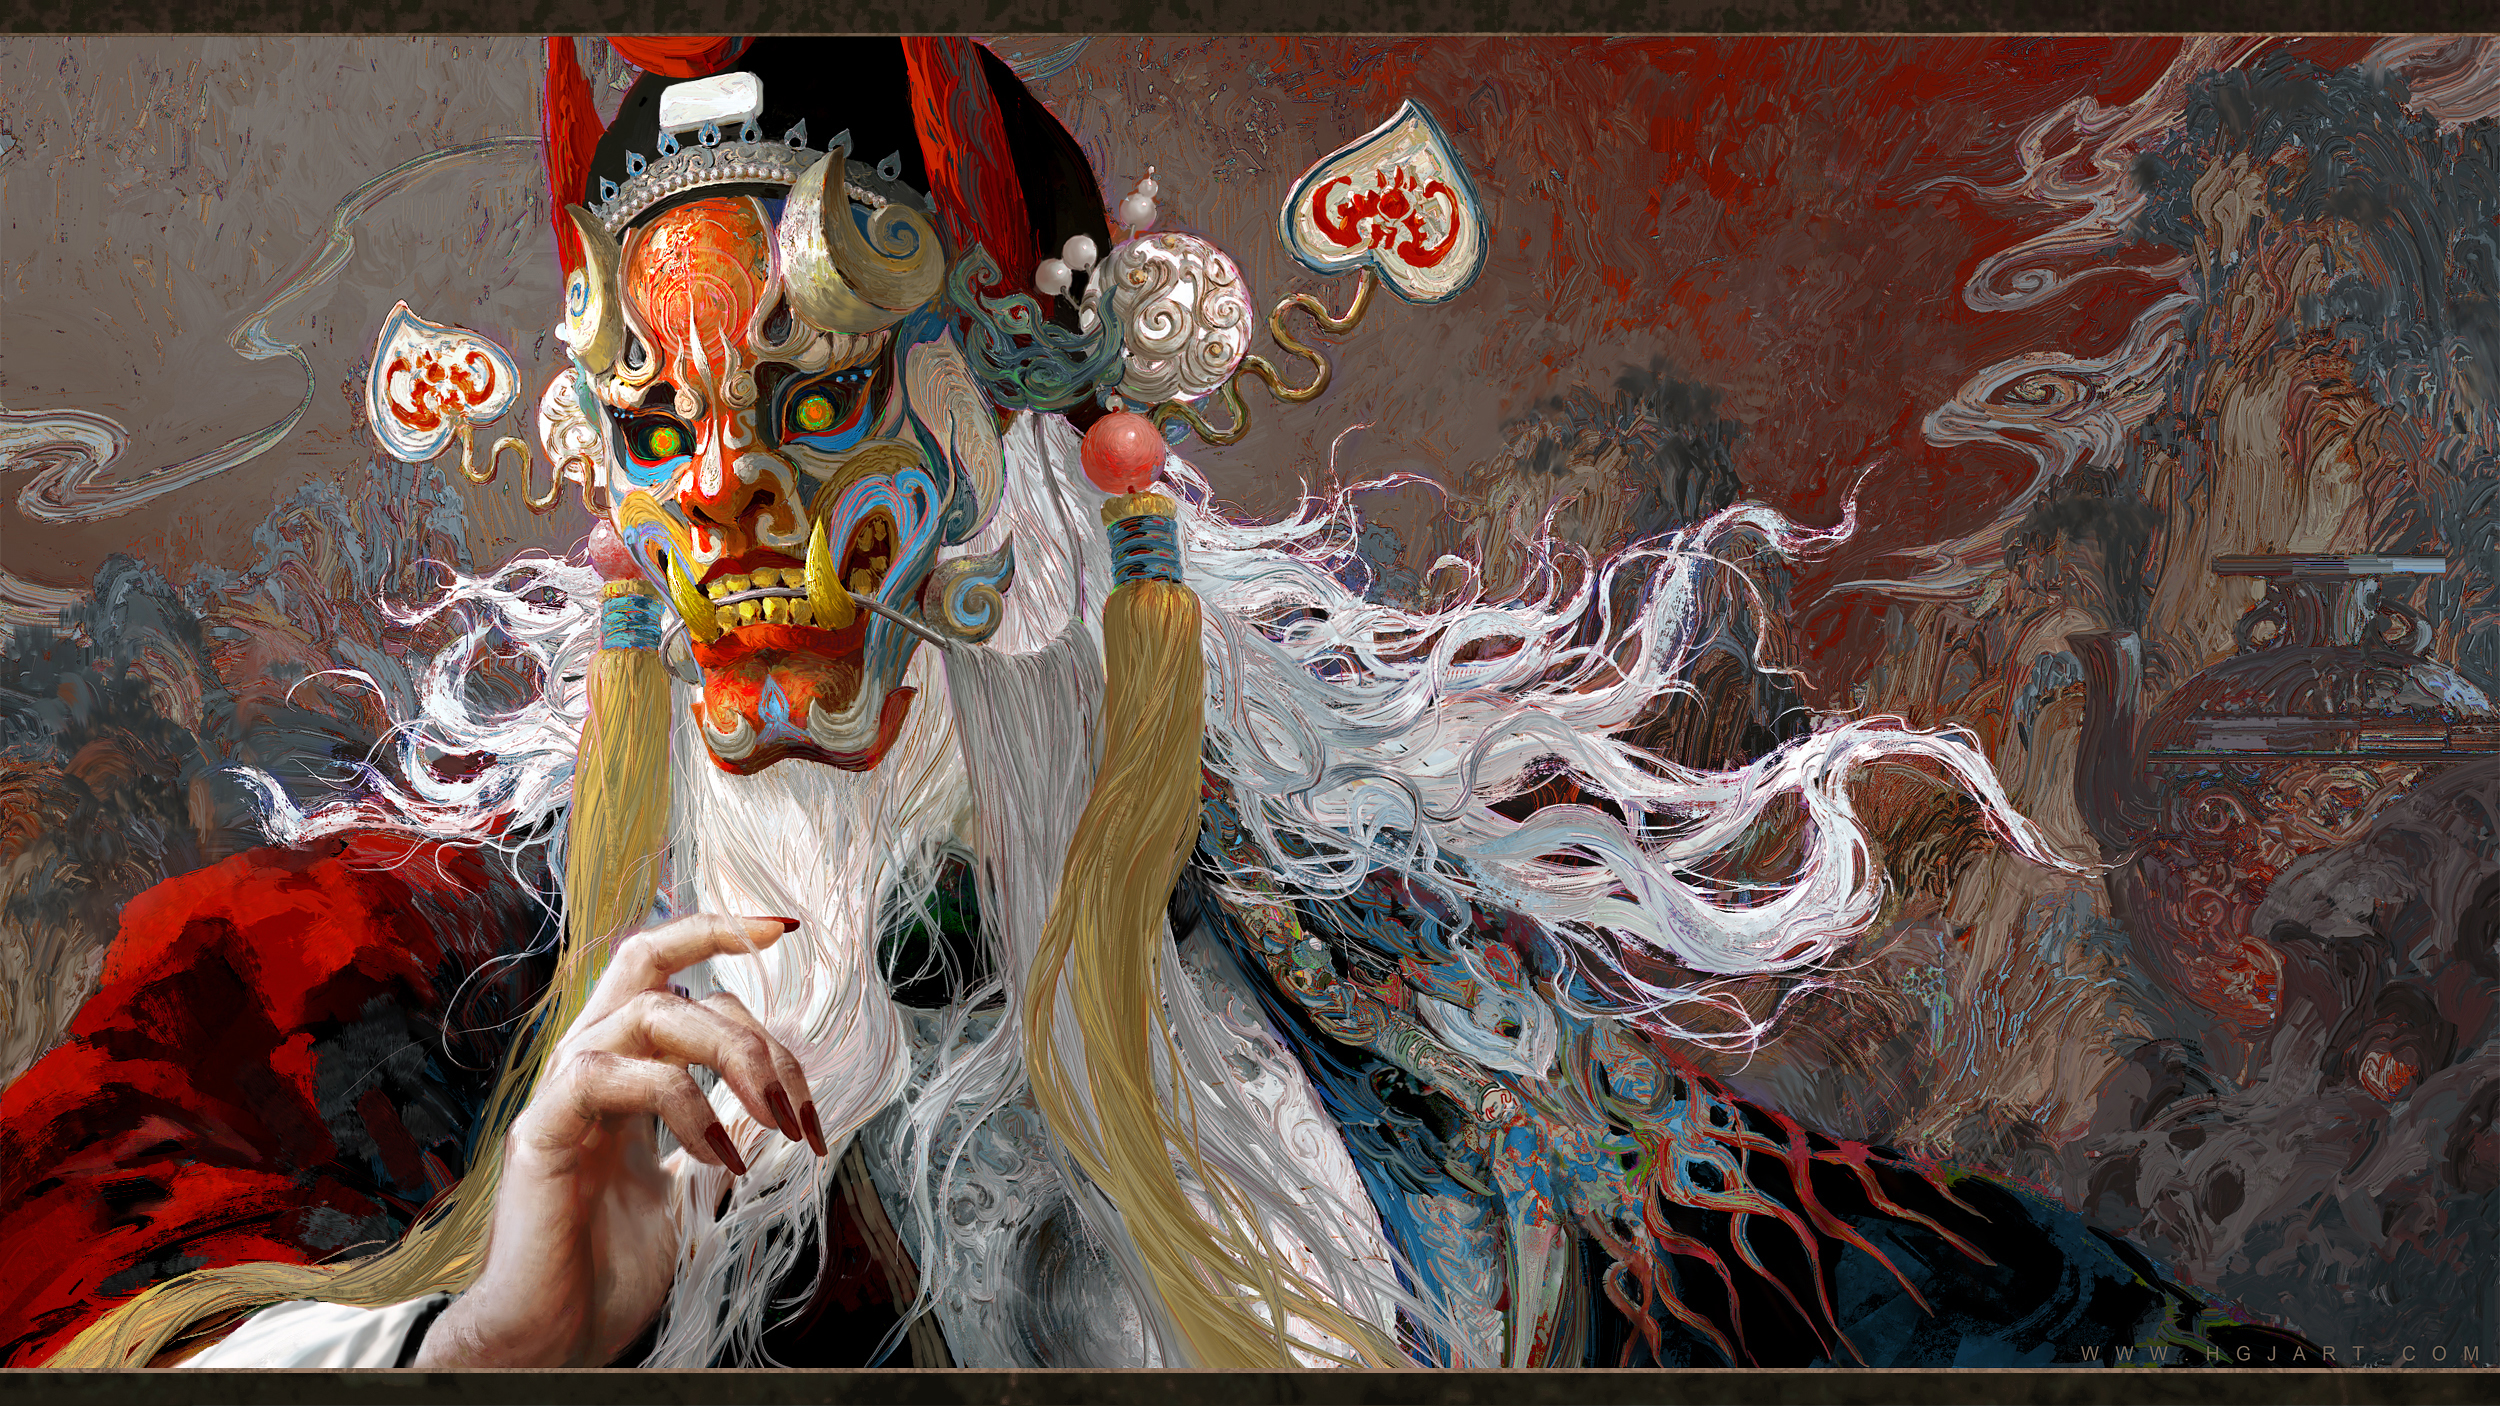 General 2500x1406 Huang Guangjian artwork mask Peking Opera Chinese clothing white hair fantasy art digital art watermarked